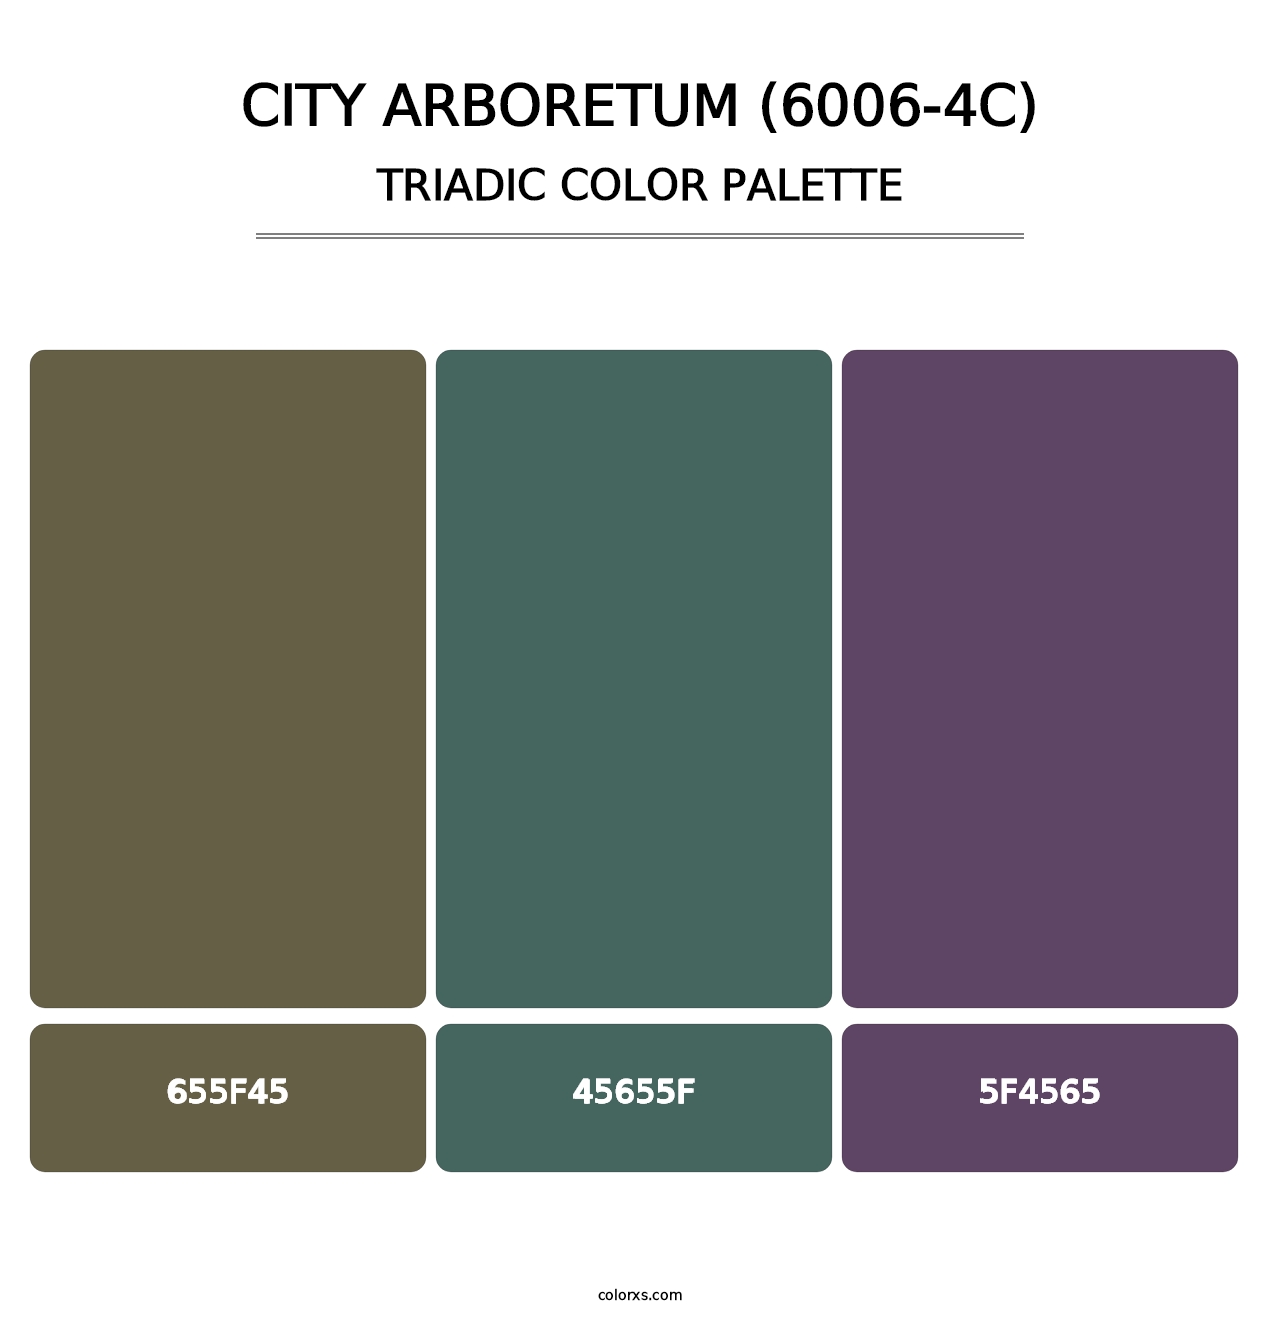 City Arboretum (6006-4C) - Triadic Color Palette